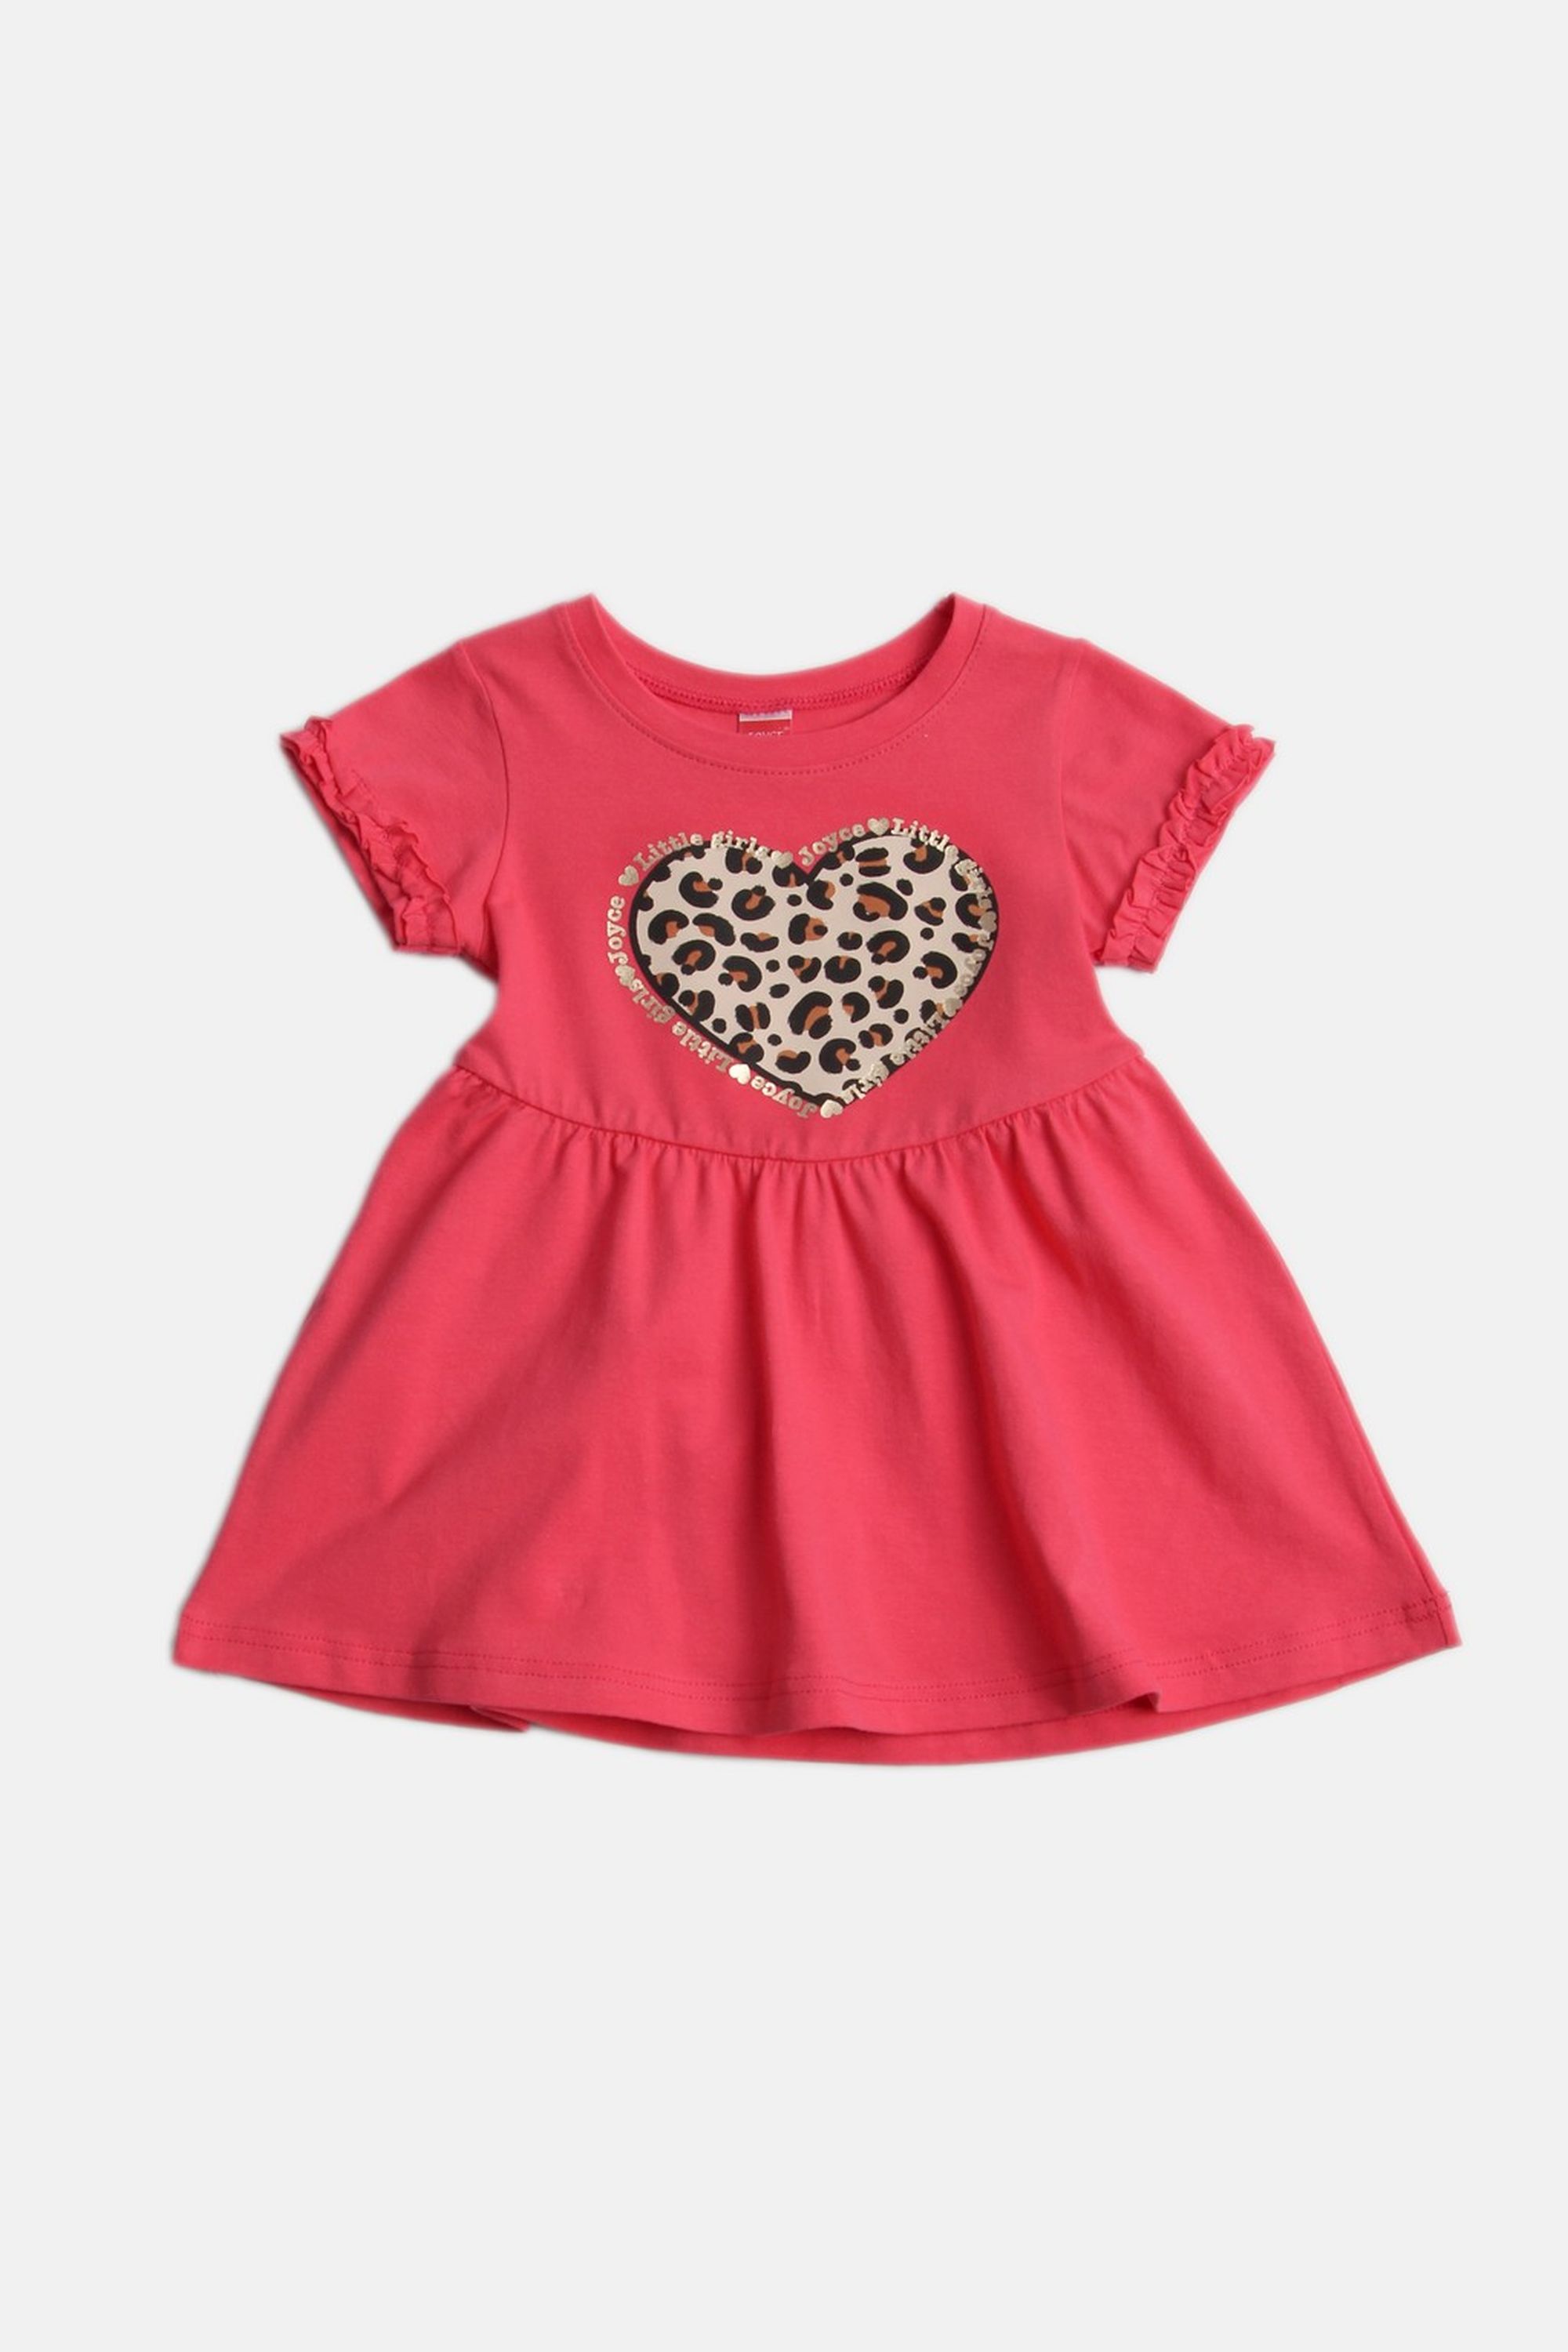 Dívčí bavlněné šaty "ANIMAL HEART"/Malinová, béžová Barva: Červená, Velikost: vel. 3 (98/100 cm)